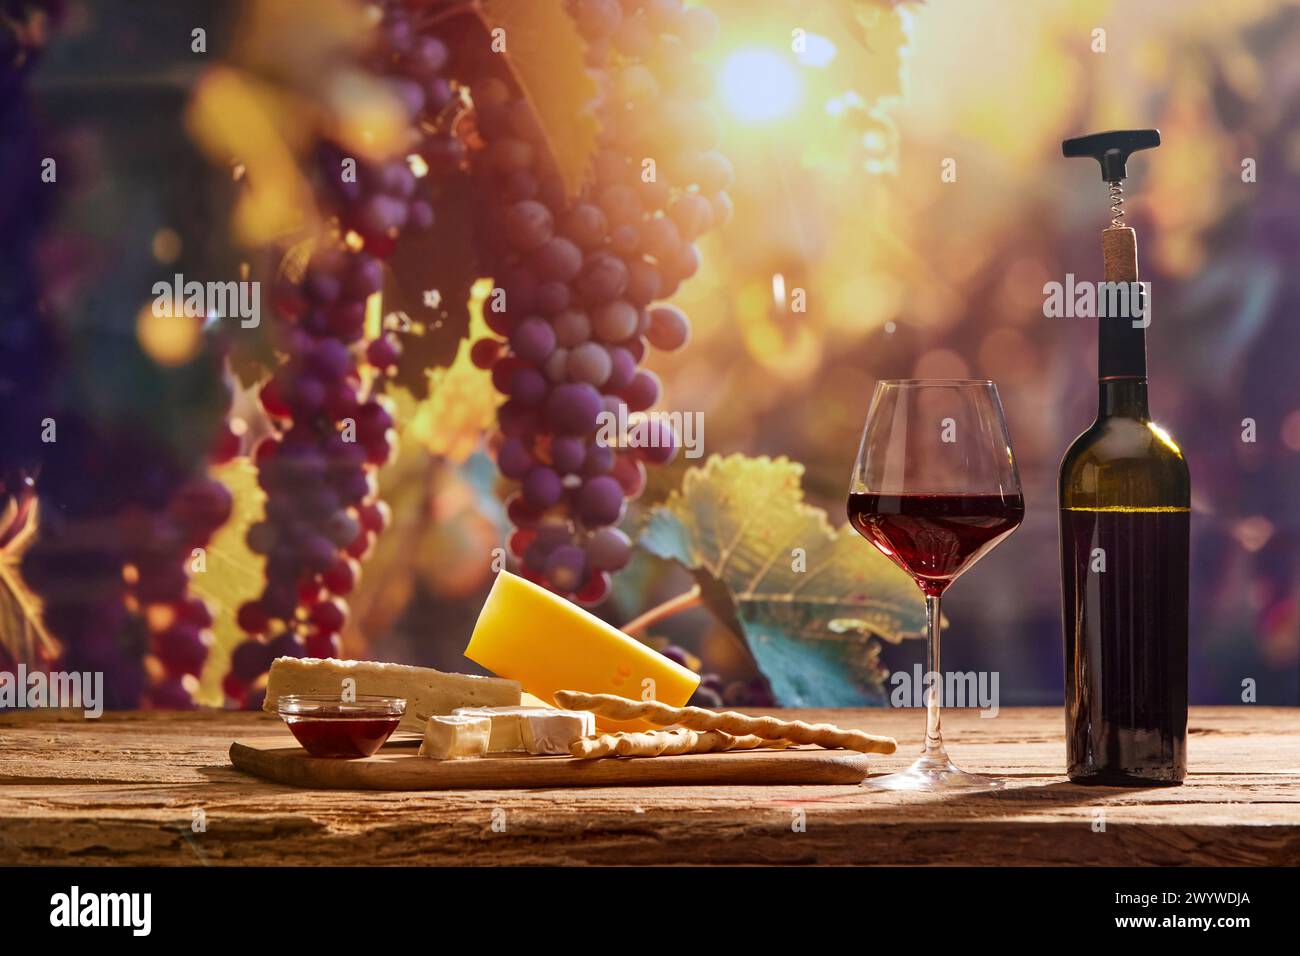 Fesselndes Bild, das die Essenz der Weinherstellung mit einer Flasche Wein und einem Glas Rotwein, Käse vor dem Hintergrund malerischer Trauben festmacht Stockfoto